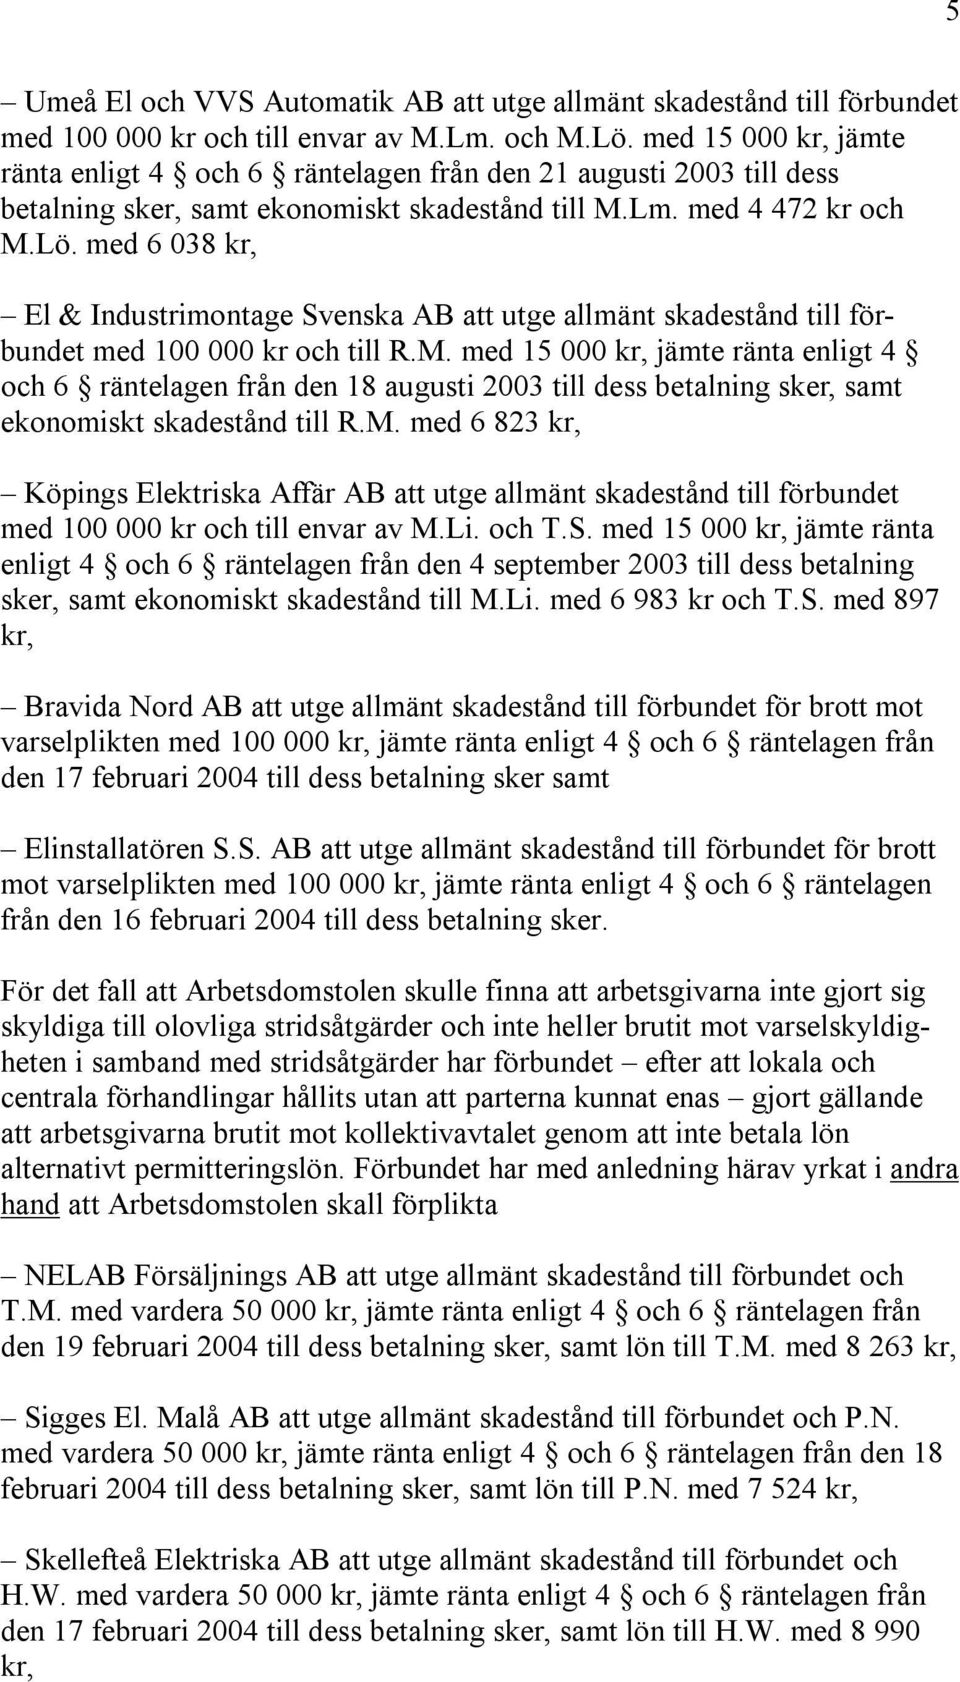 med 6 038 kr, El & Industrimontage Svenska AB att utge allmänt skadestånd till förbundet med 100 000 kr och till R.M.